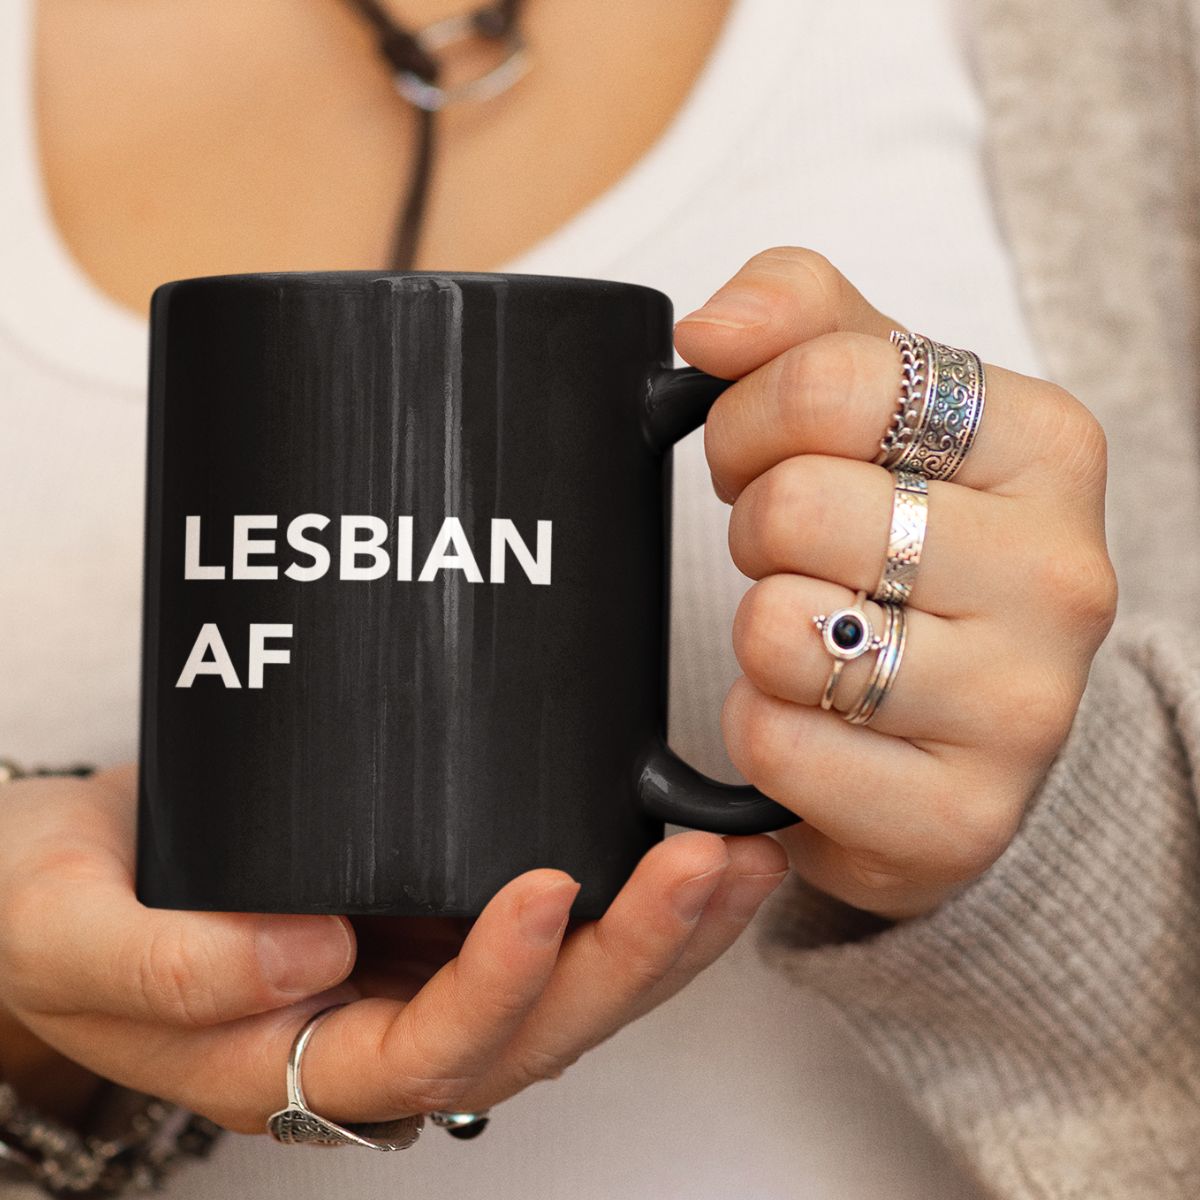 Lesbian Af Black Glossy Mug